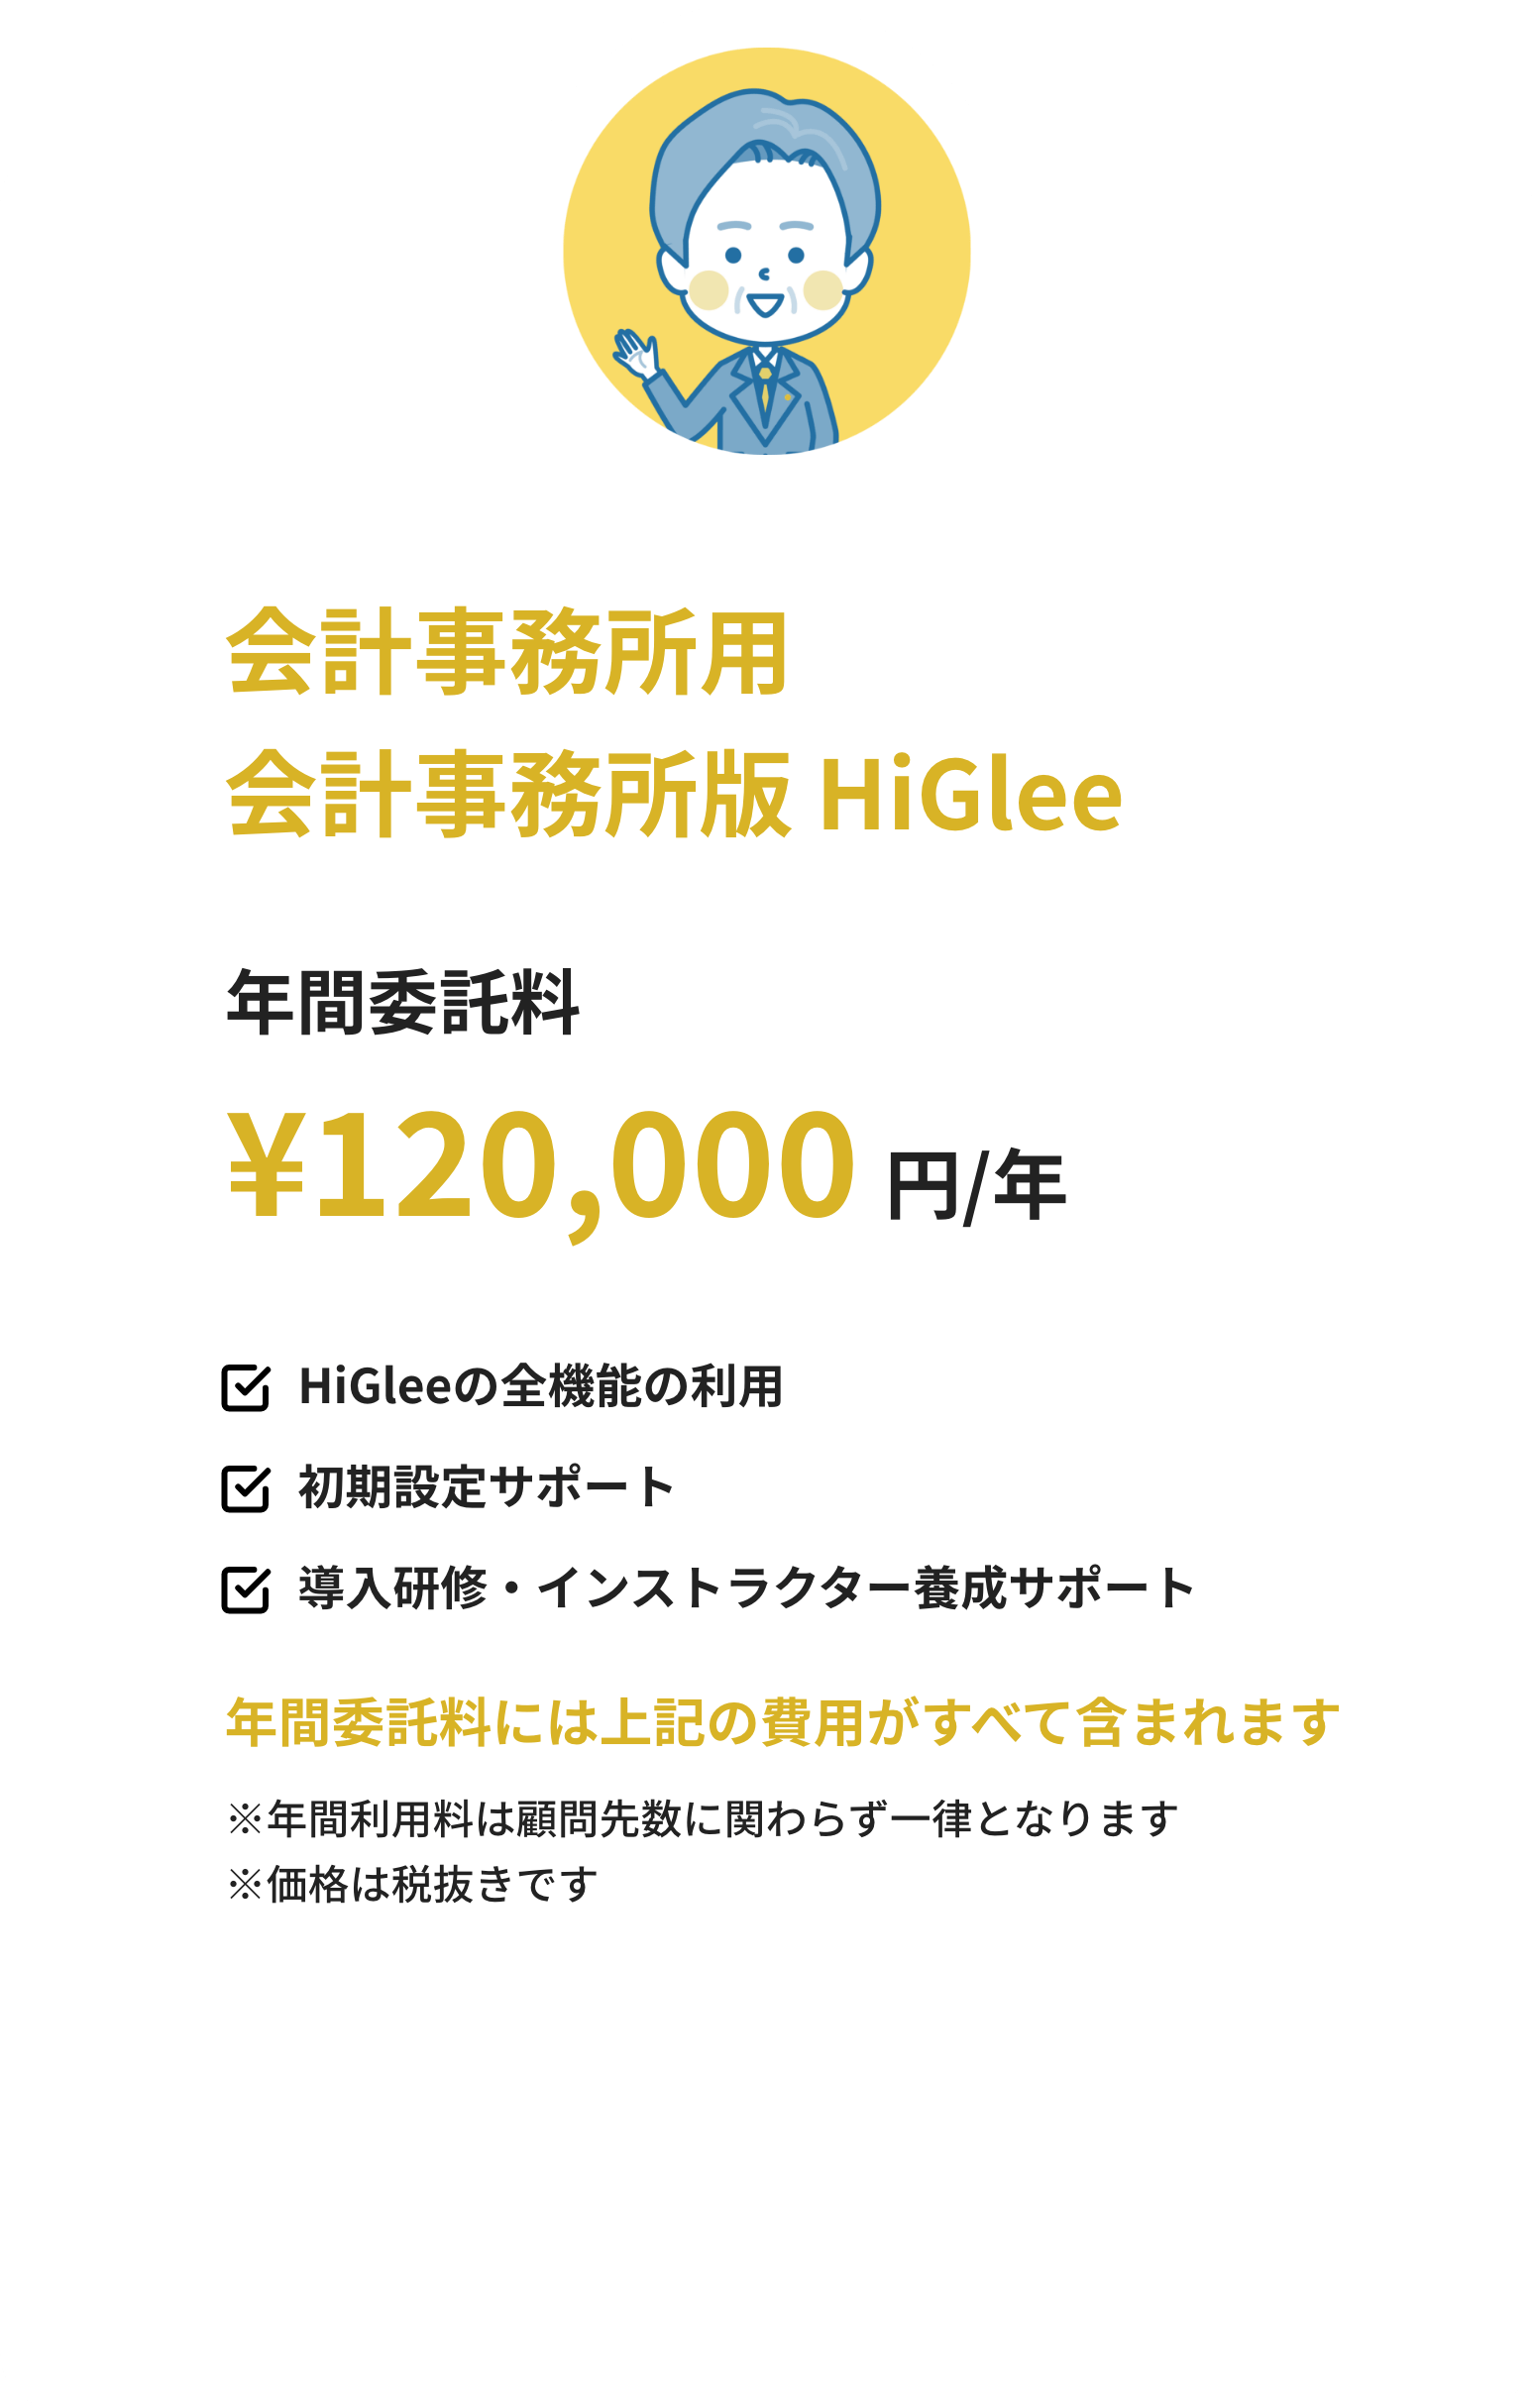 会計事務所用AE版HiGlee 年間委託料120,000円/年